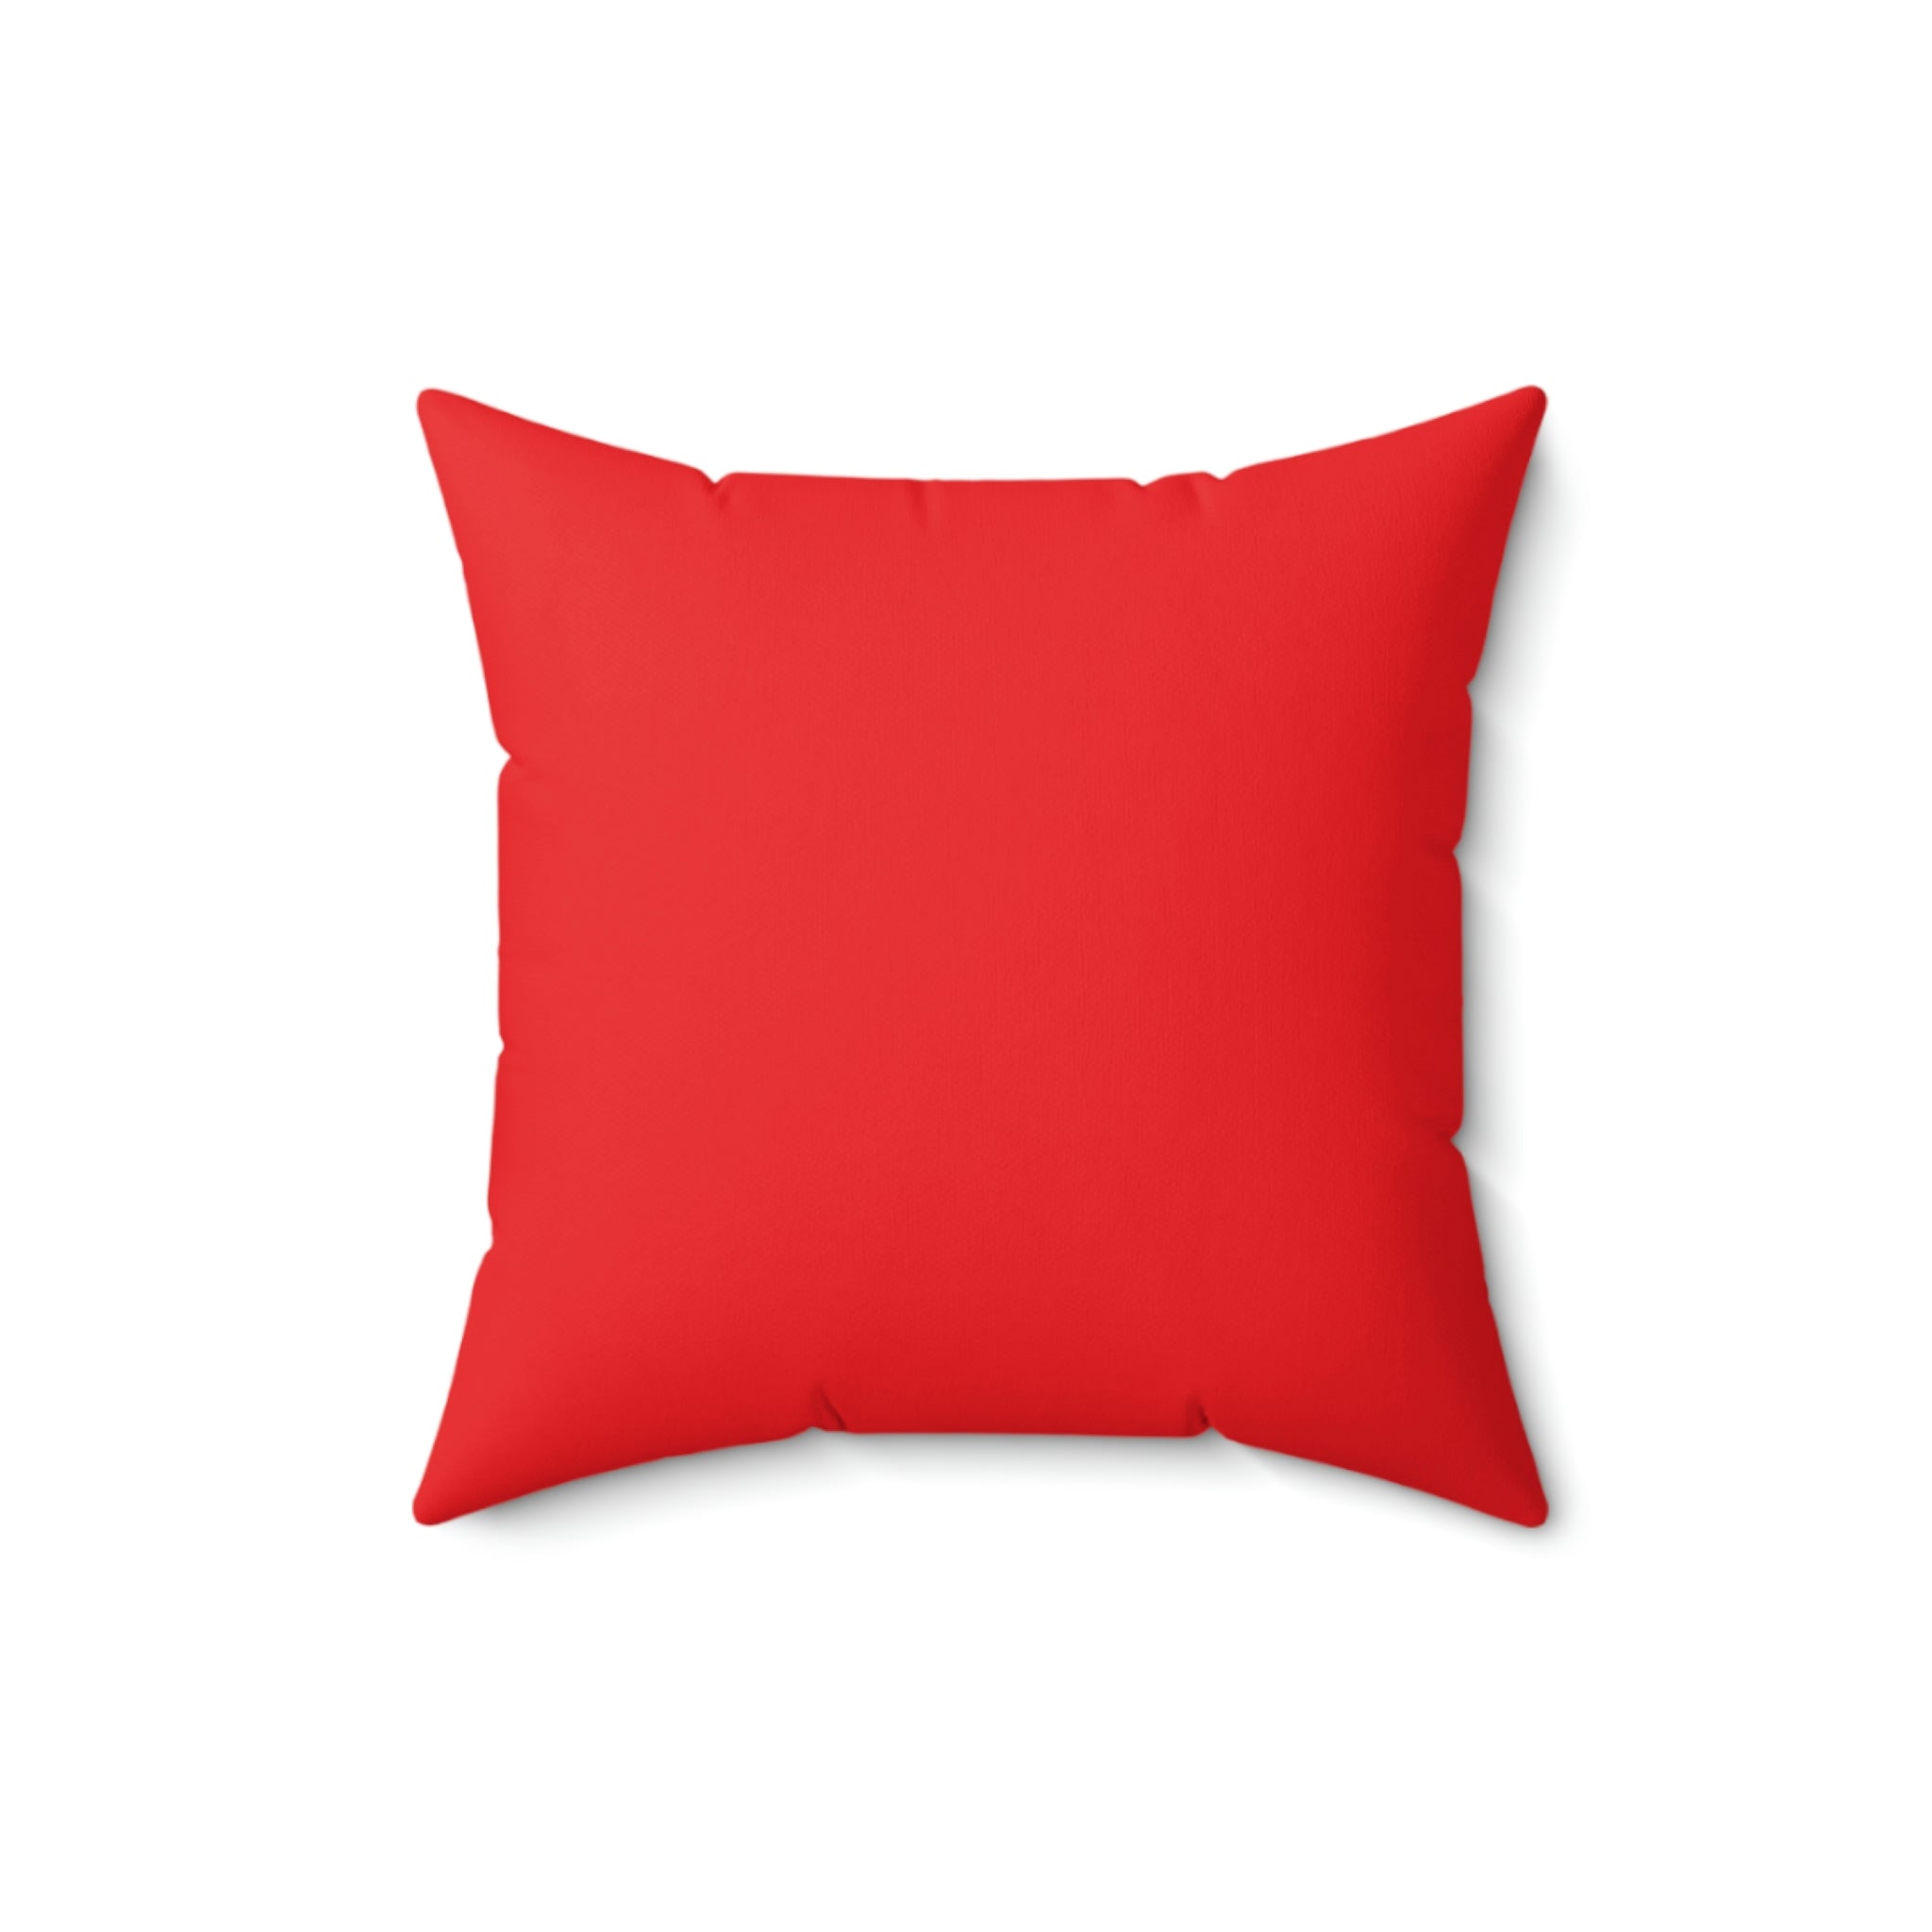 Love Spun Polyester Pillow red heart